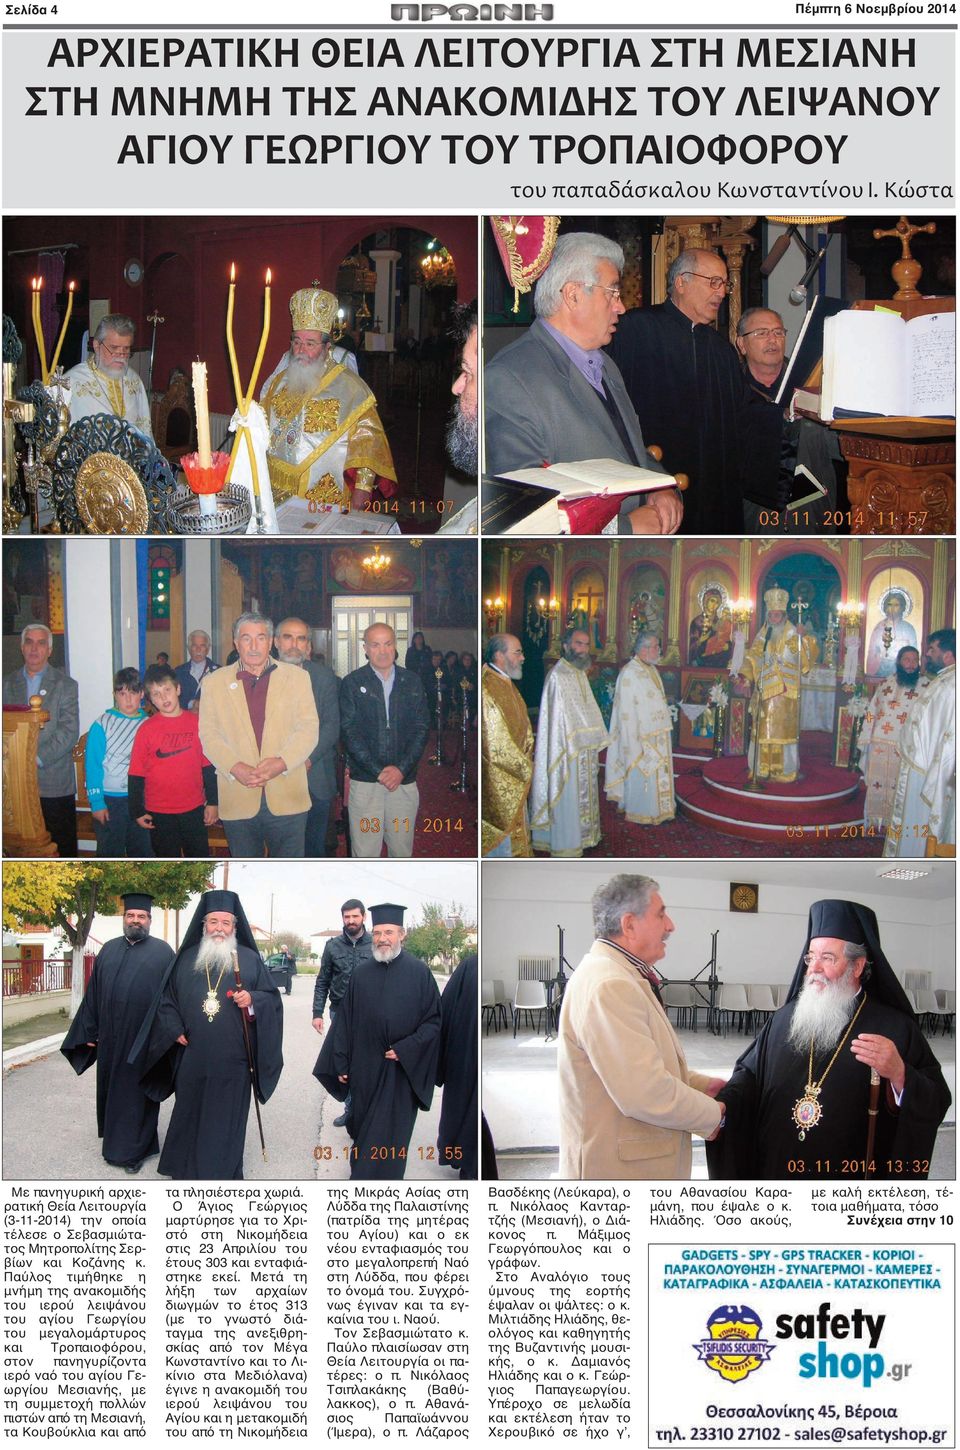 Παύλος τιμήθηκε η μνήμη της ανακομιδής του ιερού λειψάνου του αγίου Γεωργίου του μεγαλομάρτυρος και Τροπαιοφόρου, στον πανηγυρίζοντα ιερό ναό του αγίου Γεωργίου Μεσιανής, με τη συμμετοχή πολλών